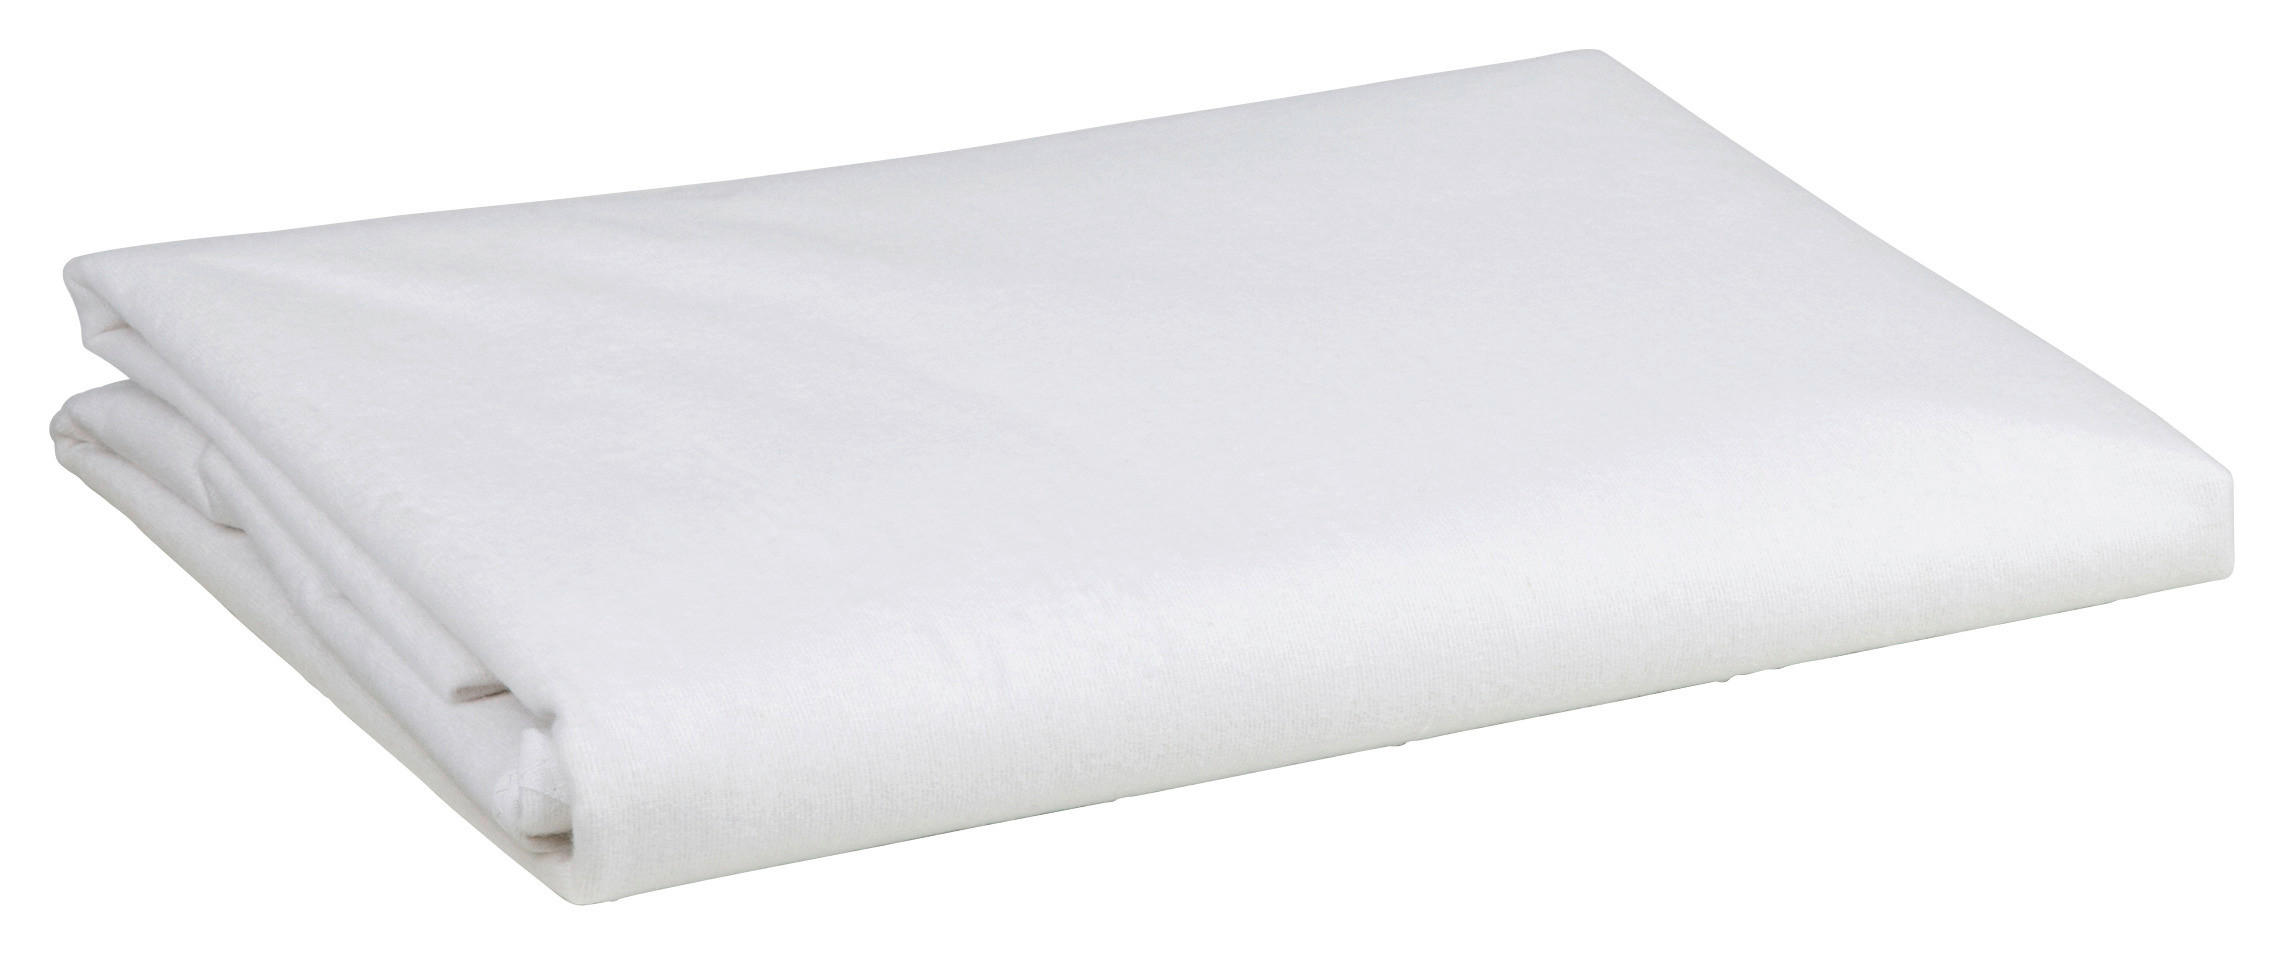 MATRATZENAUFLAGE   140/200 cm  - Weiß, Basics, Textil (140/200cm) - Sleeptex